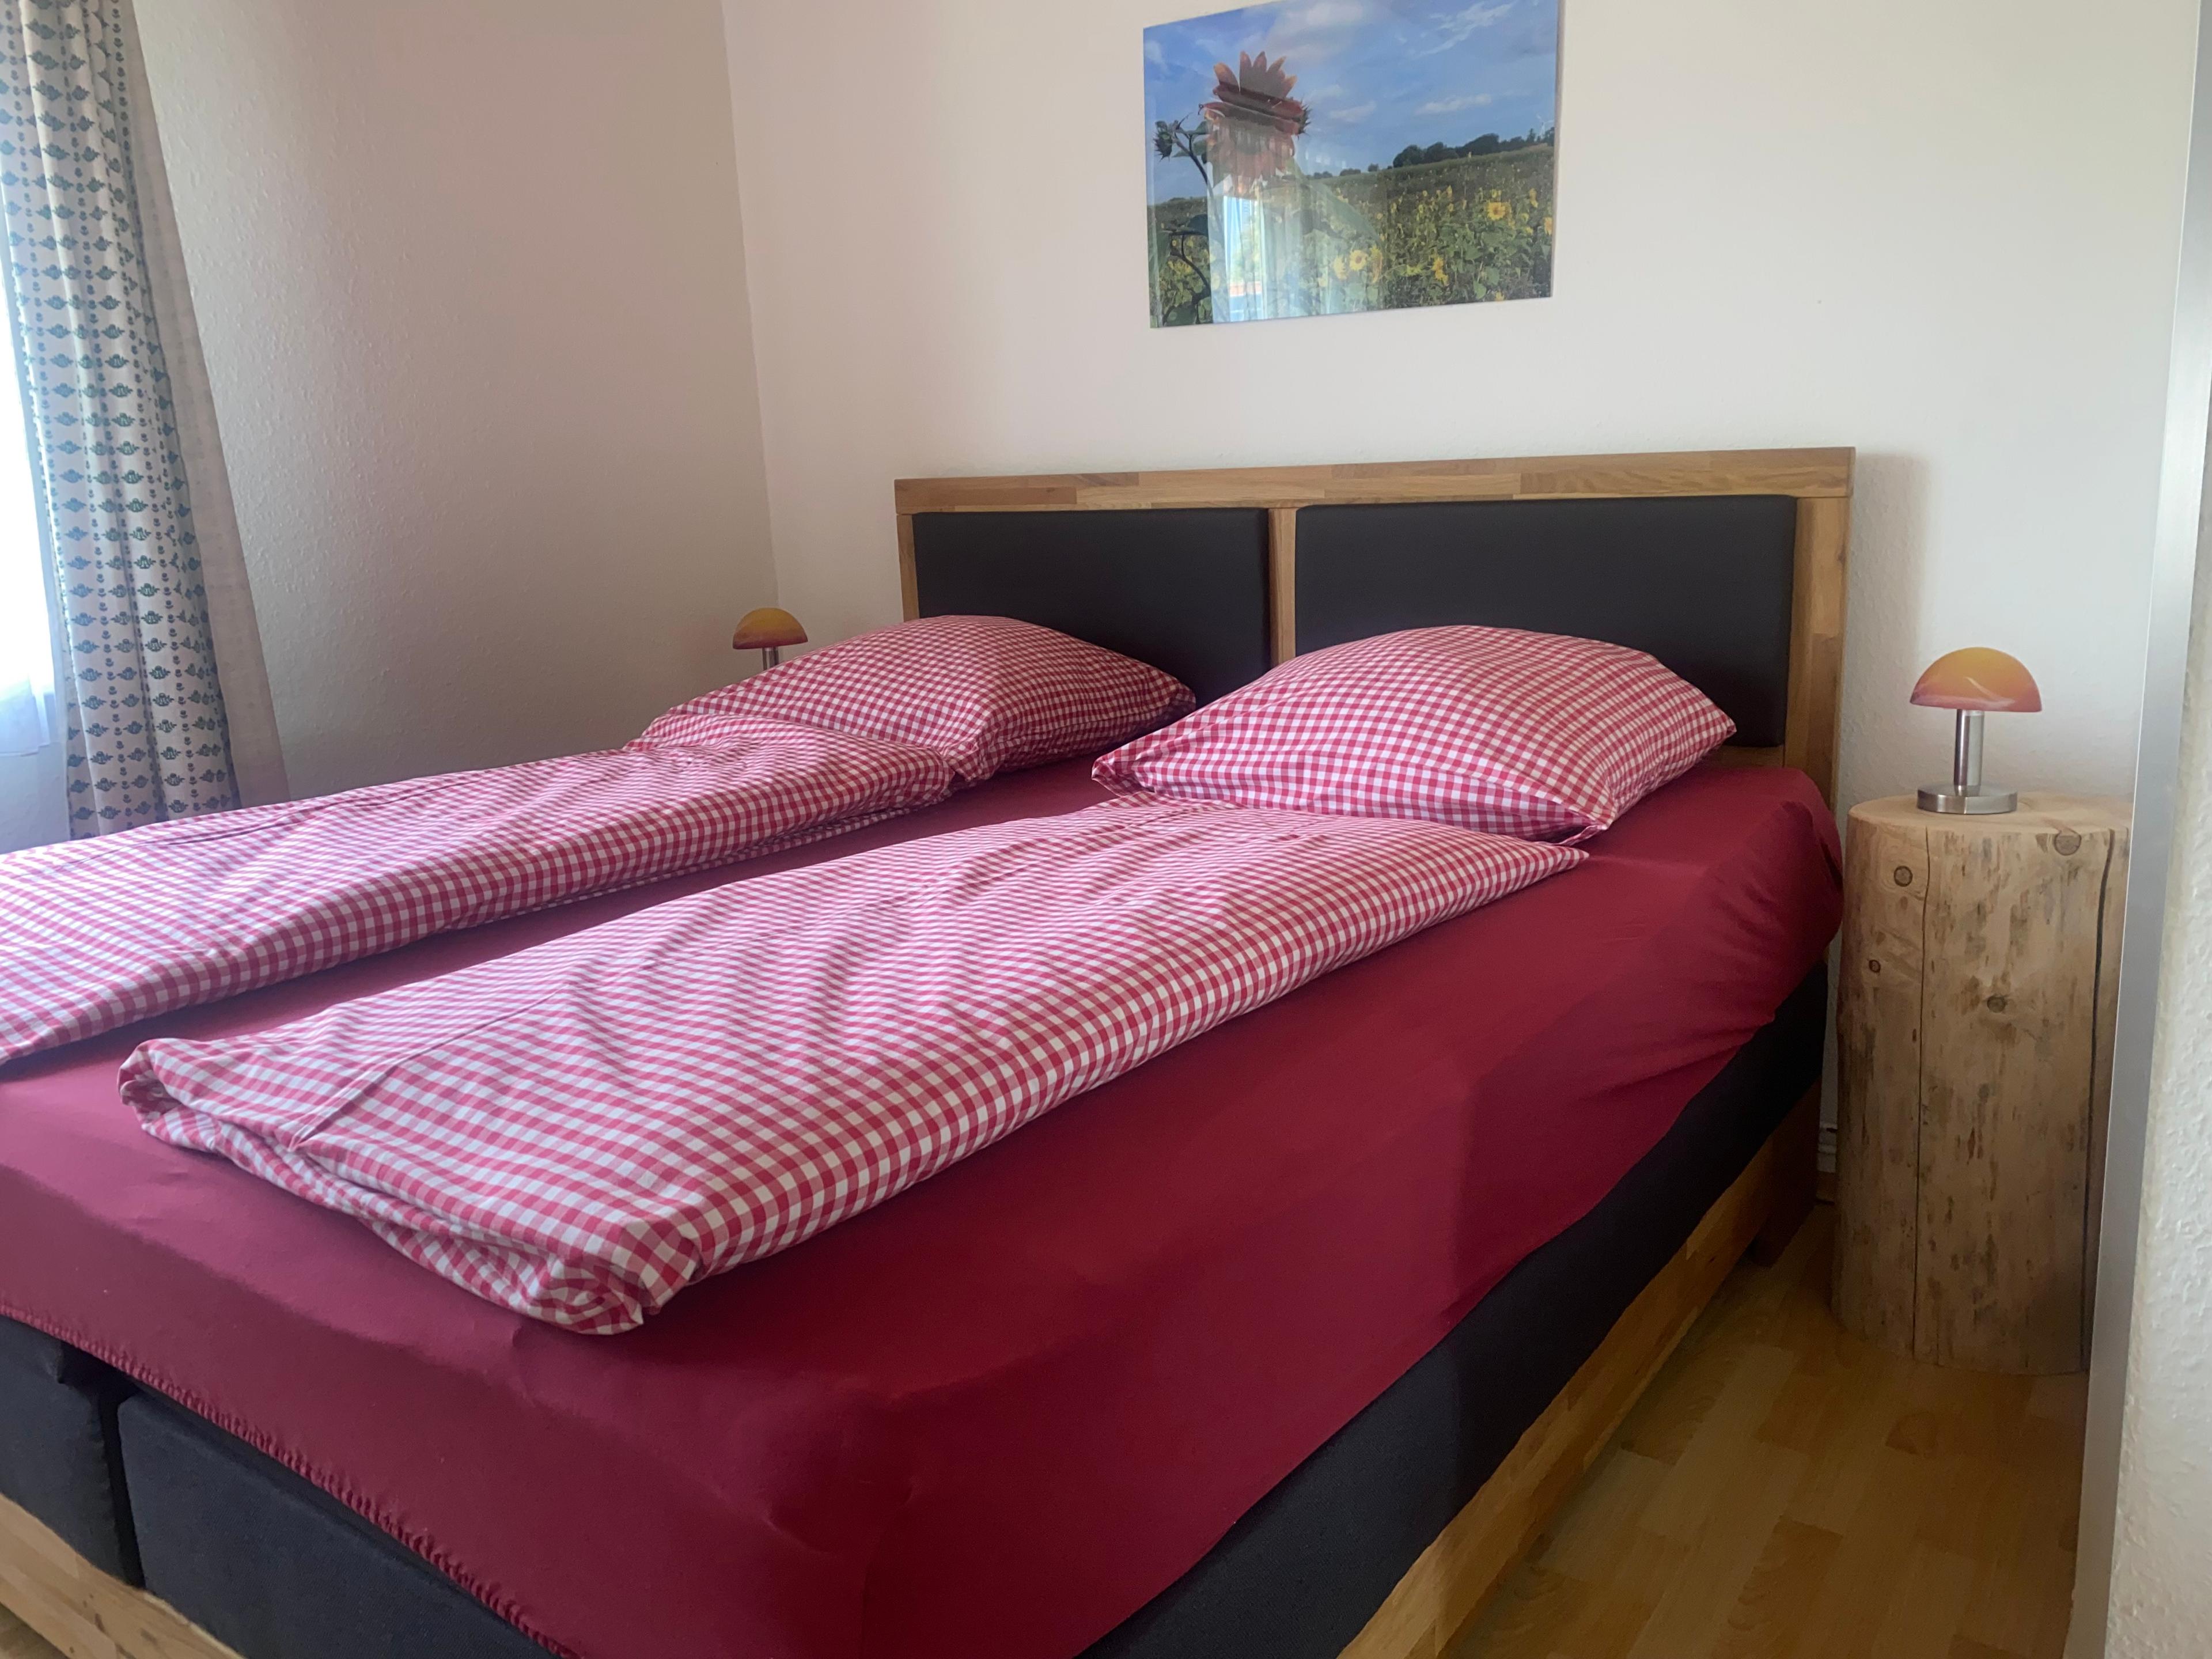 Schlafzimmer der Ferienwohnung "Apfelblüte" auf dem Neuland-Hof Spöring